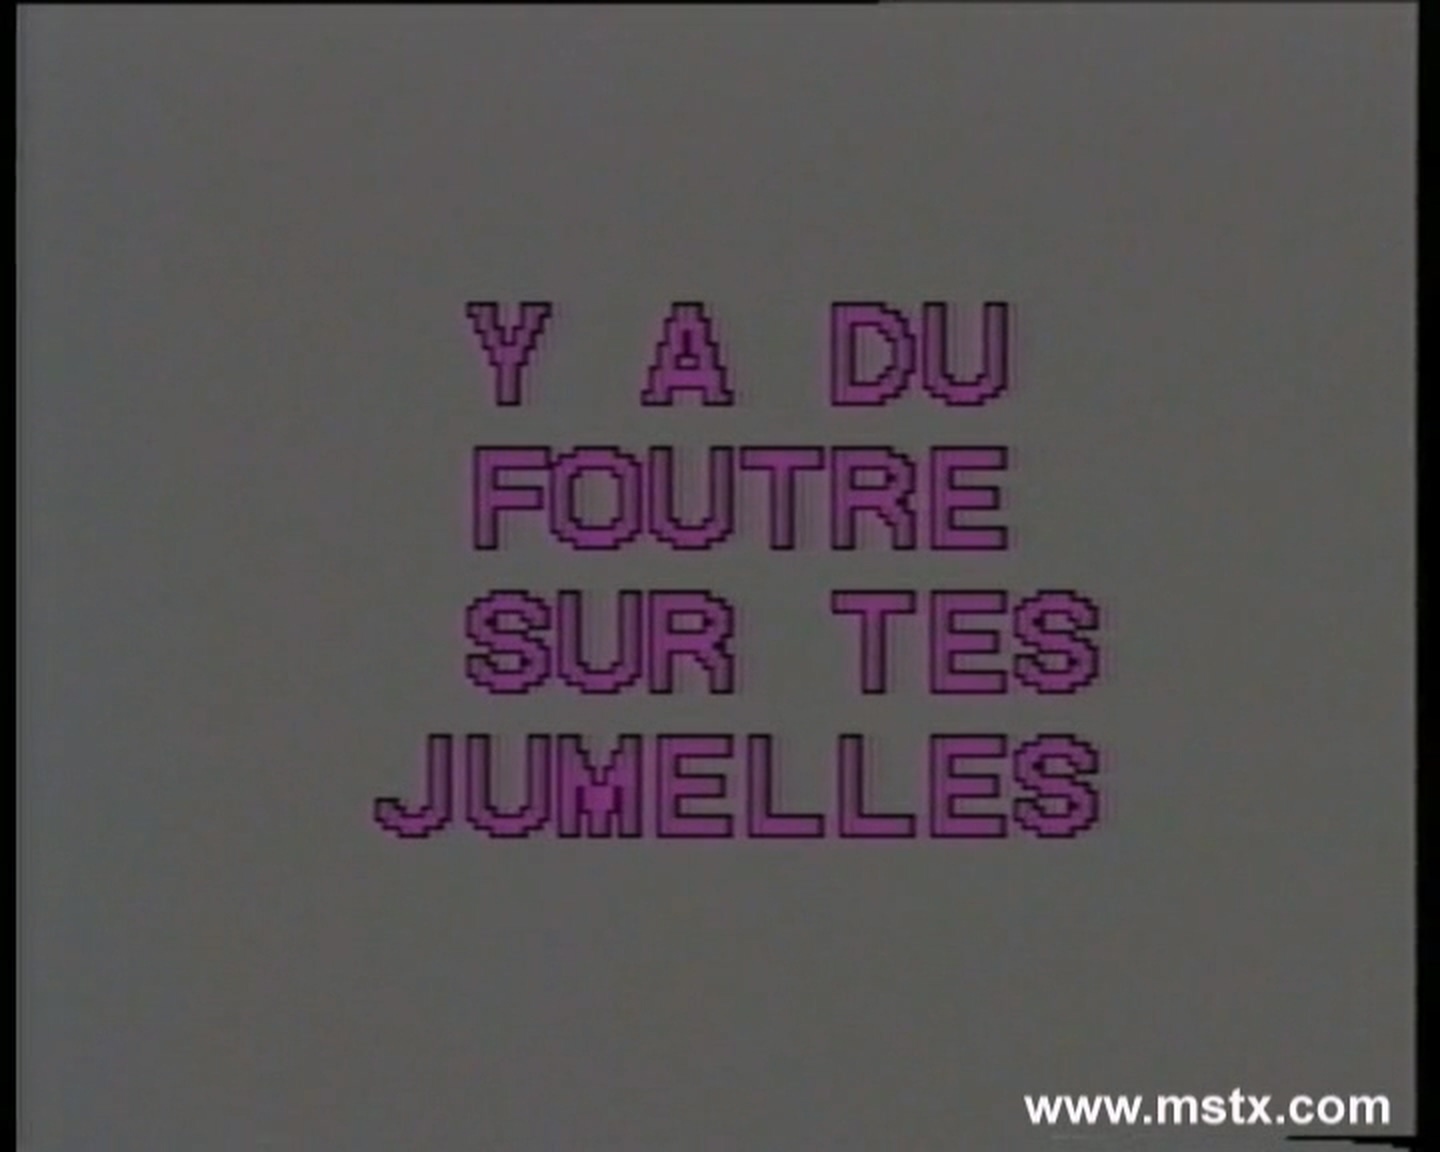 Coralie & Flora (сцена из "Y a du foutre sur tes jumelles") [1994 г., Anal,All Sex, DVDRip]